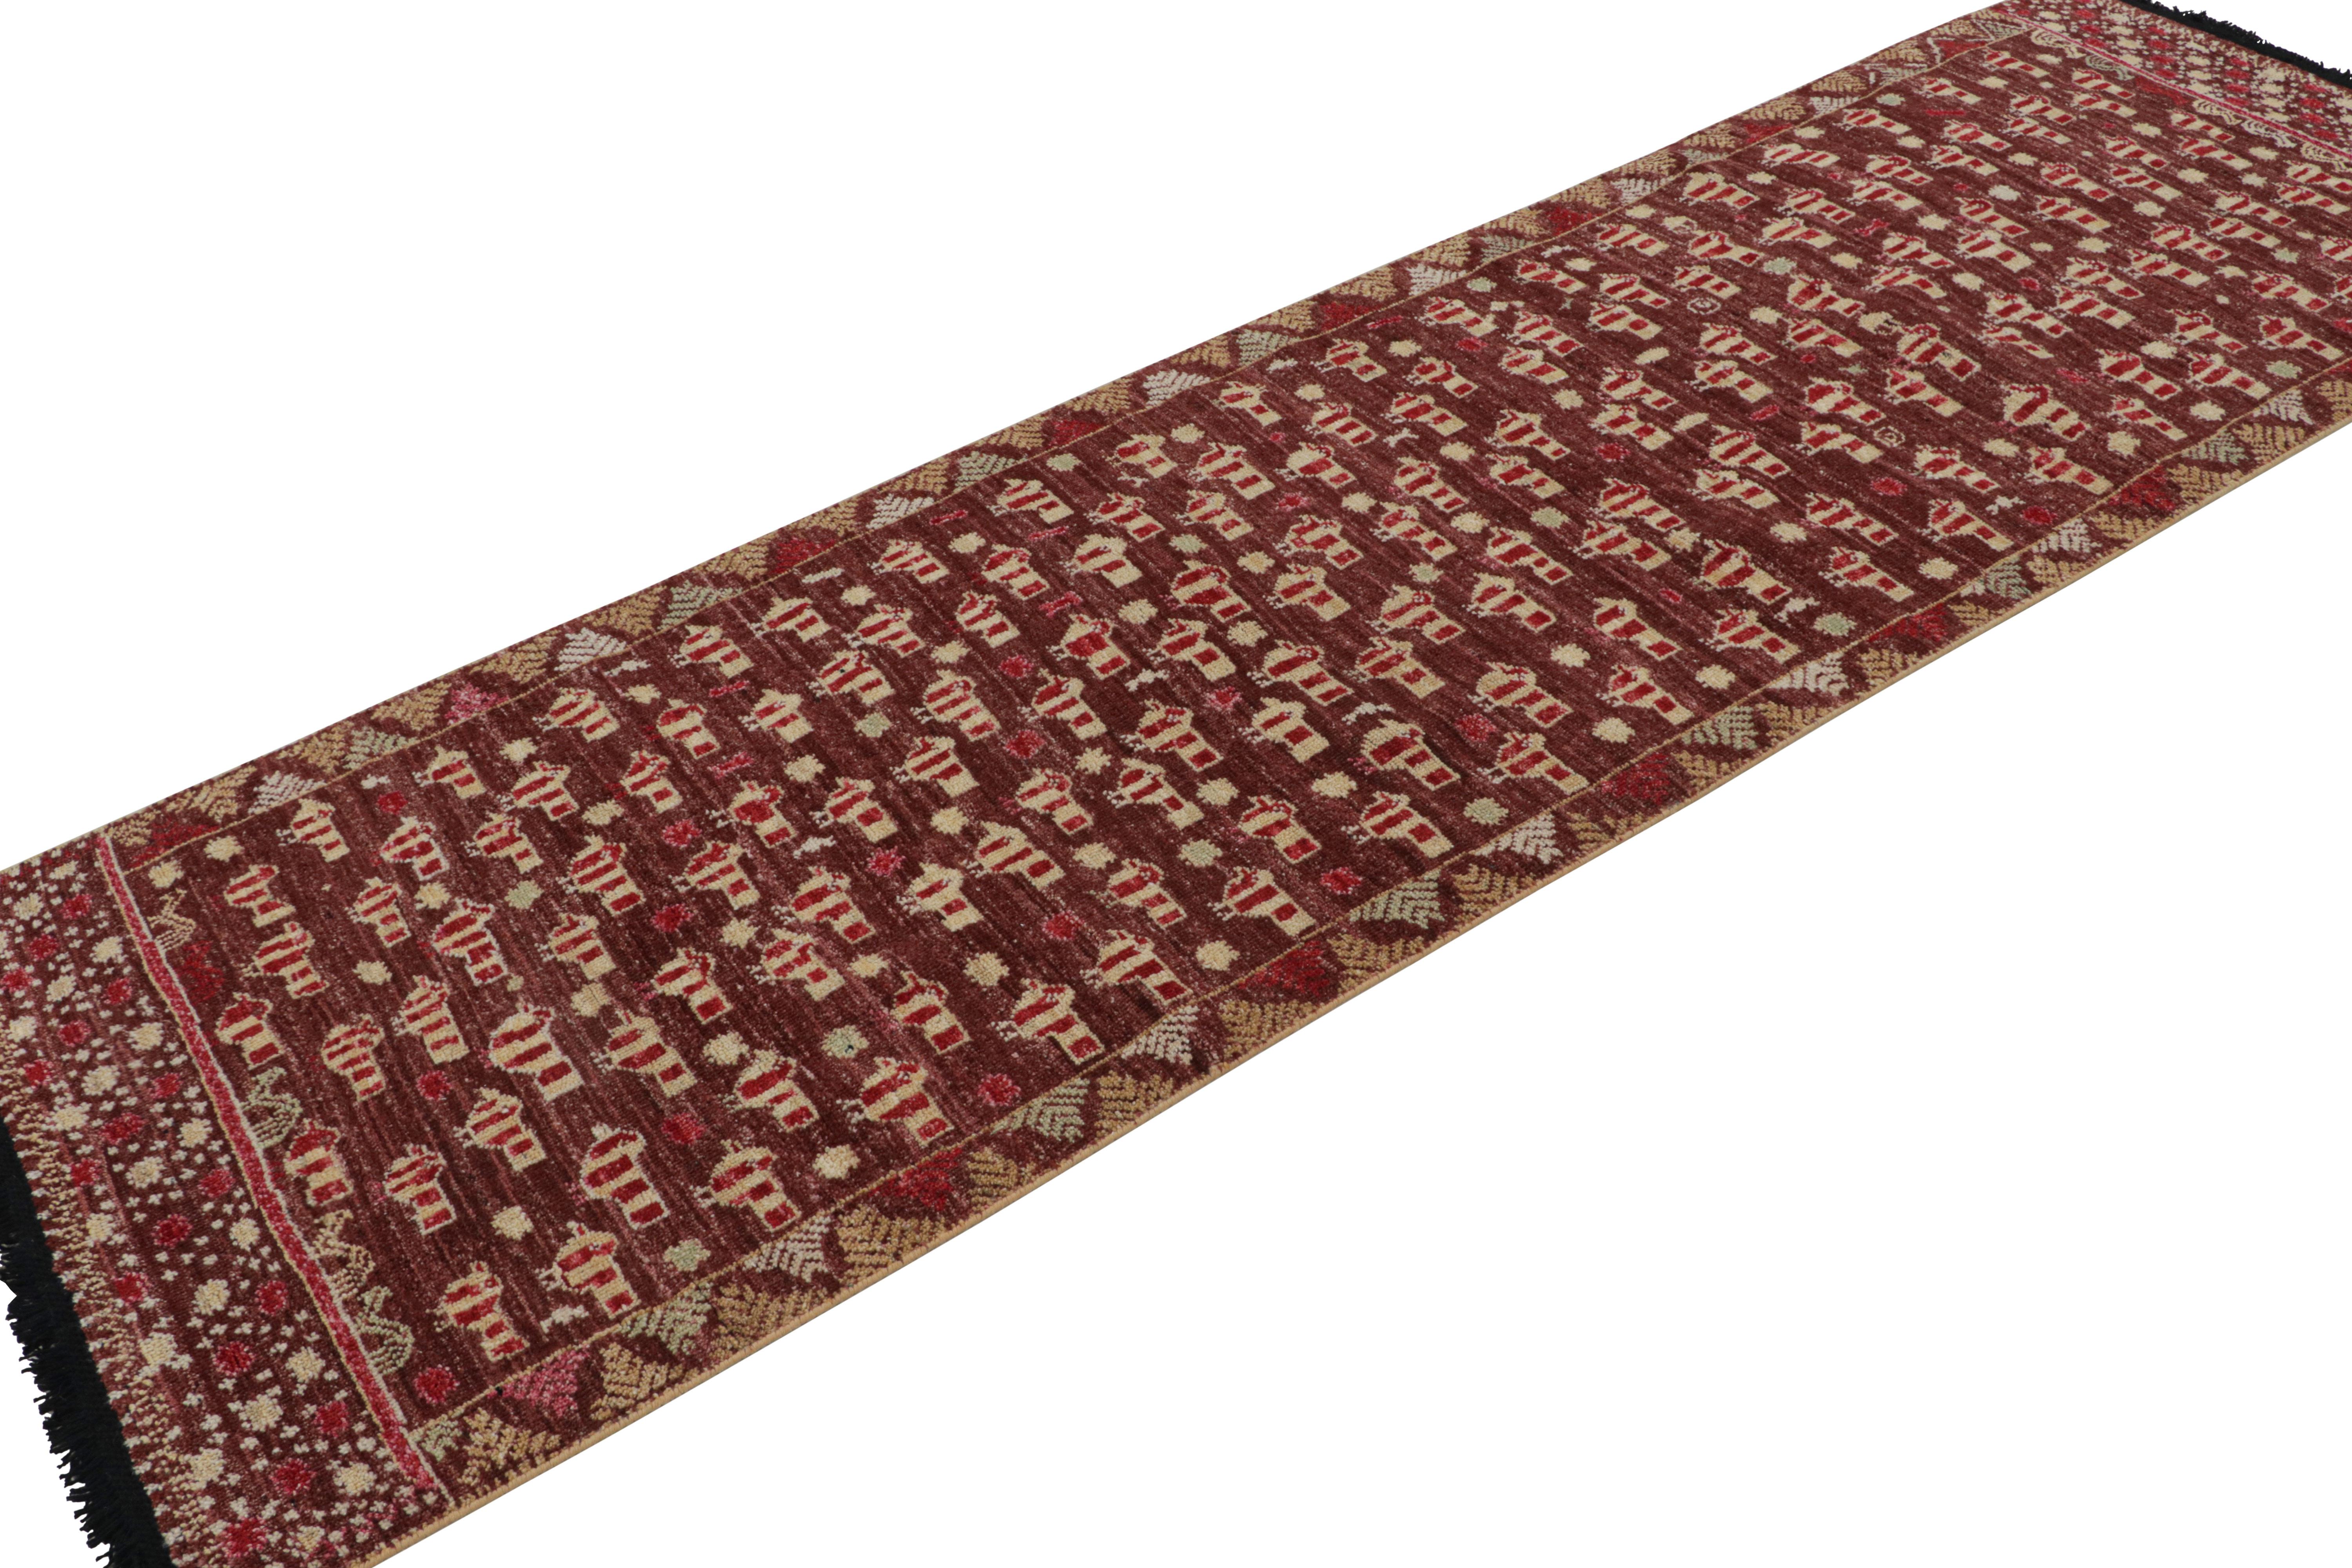 Dieser 3x10-Läufer aus der Burano-Kollektion von Rug & Kilim ist von Stammesteppichen mit seltenen malerischen Mustern inspiriert. Handgeknüpft aus Ghazni-Wolle.

Über das Design: 

Der Teppich zeigt einen minimalistischen, primitivistischen Look